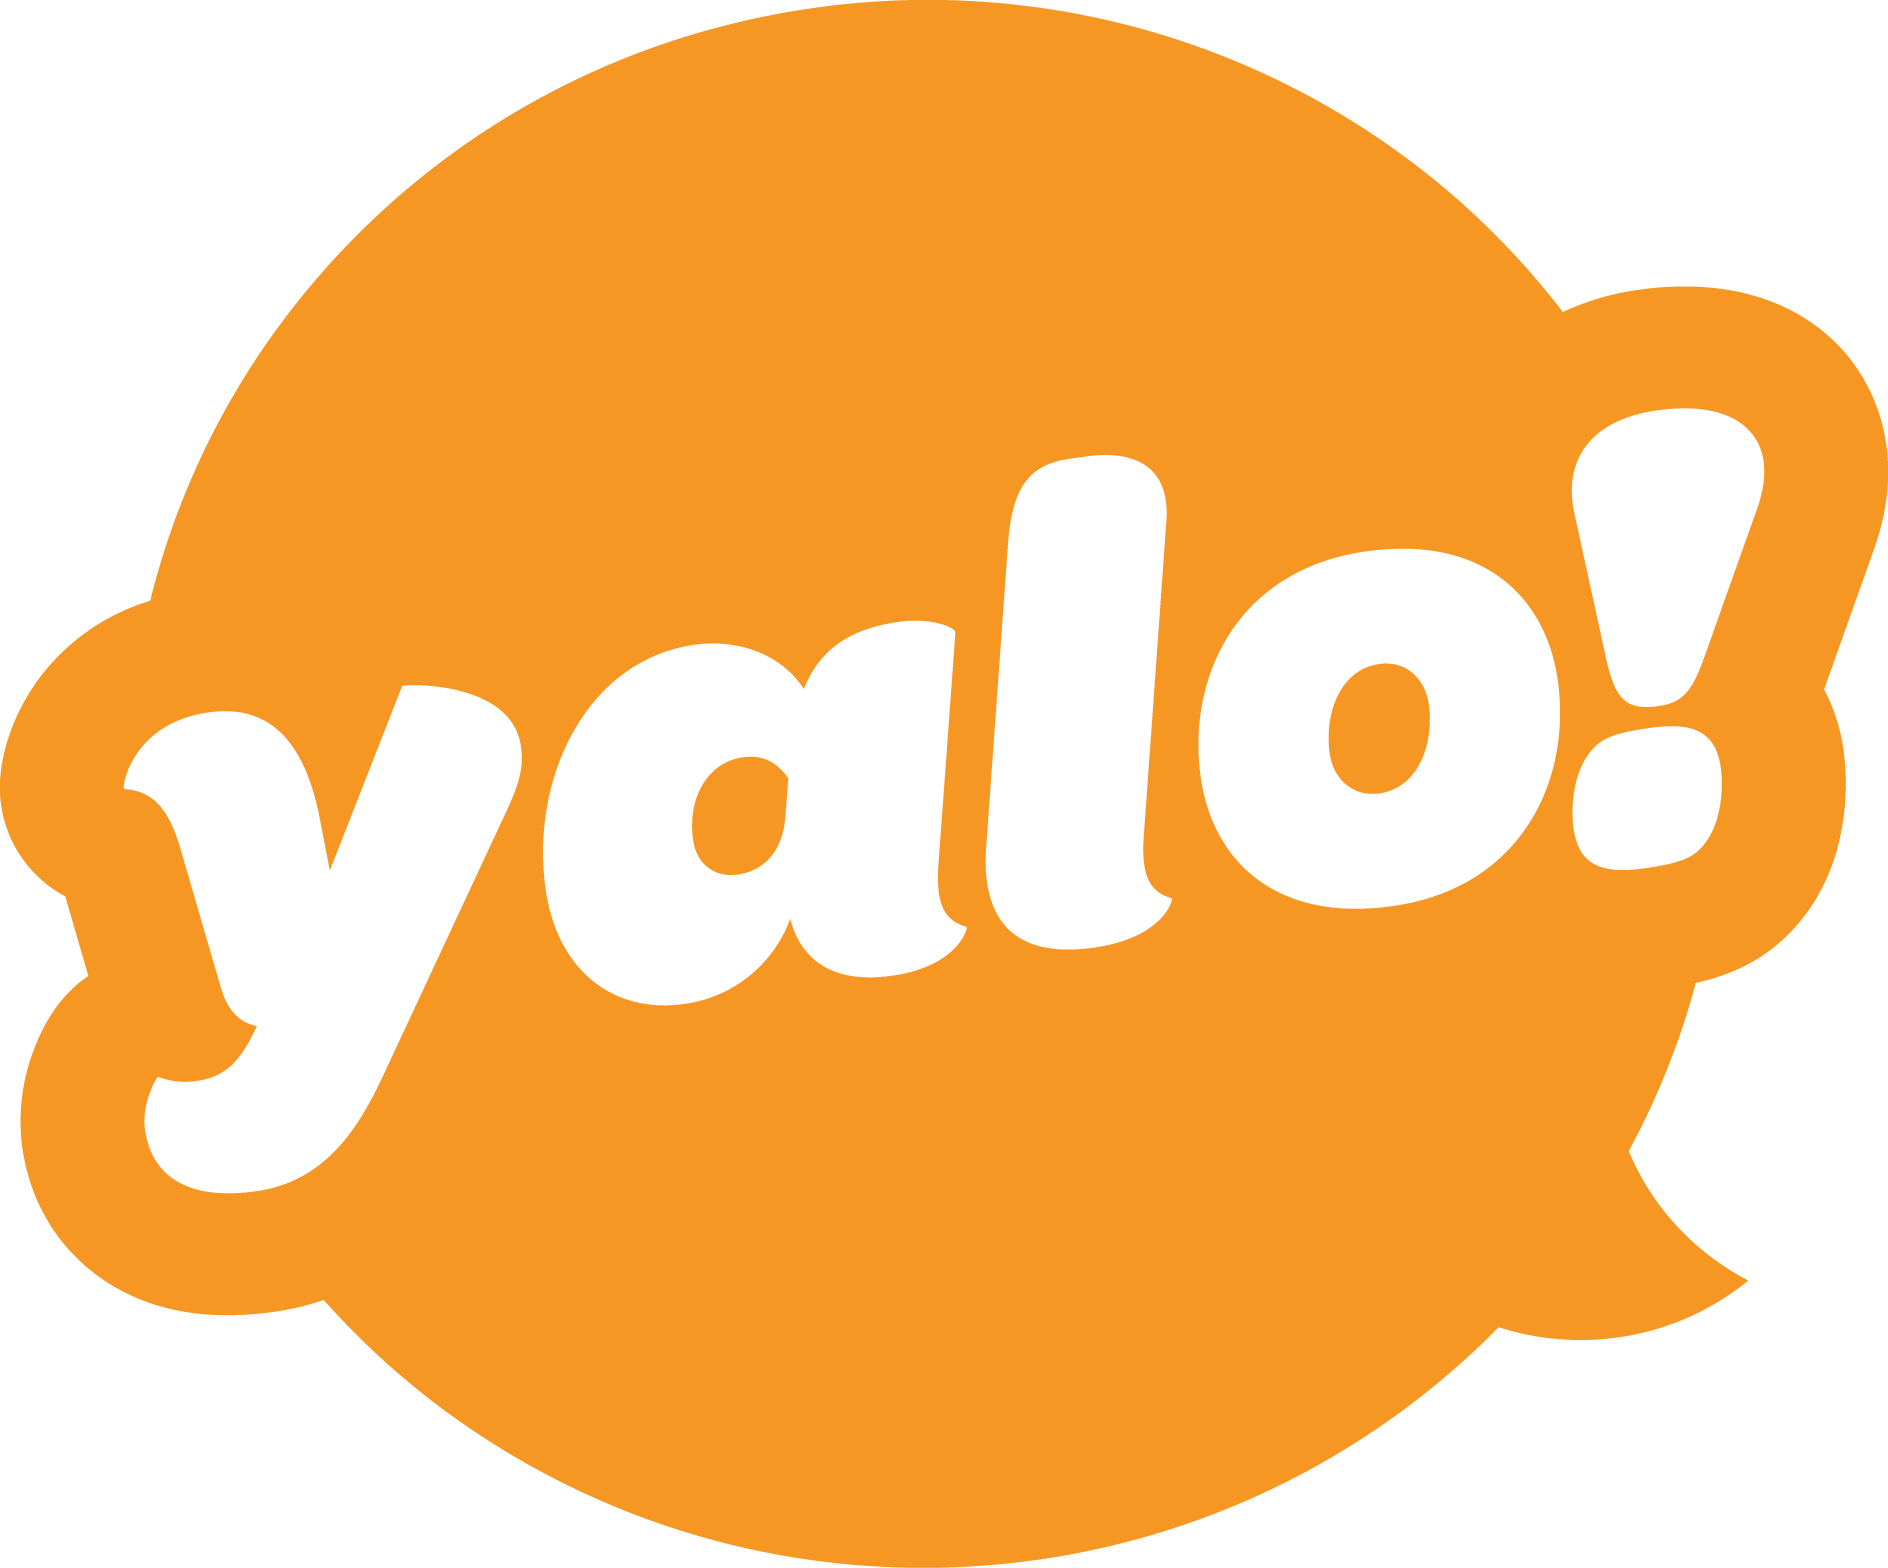 Digital Yalo, LLC